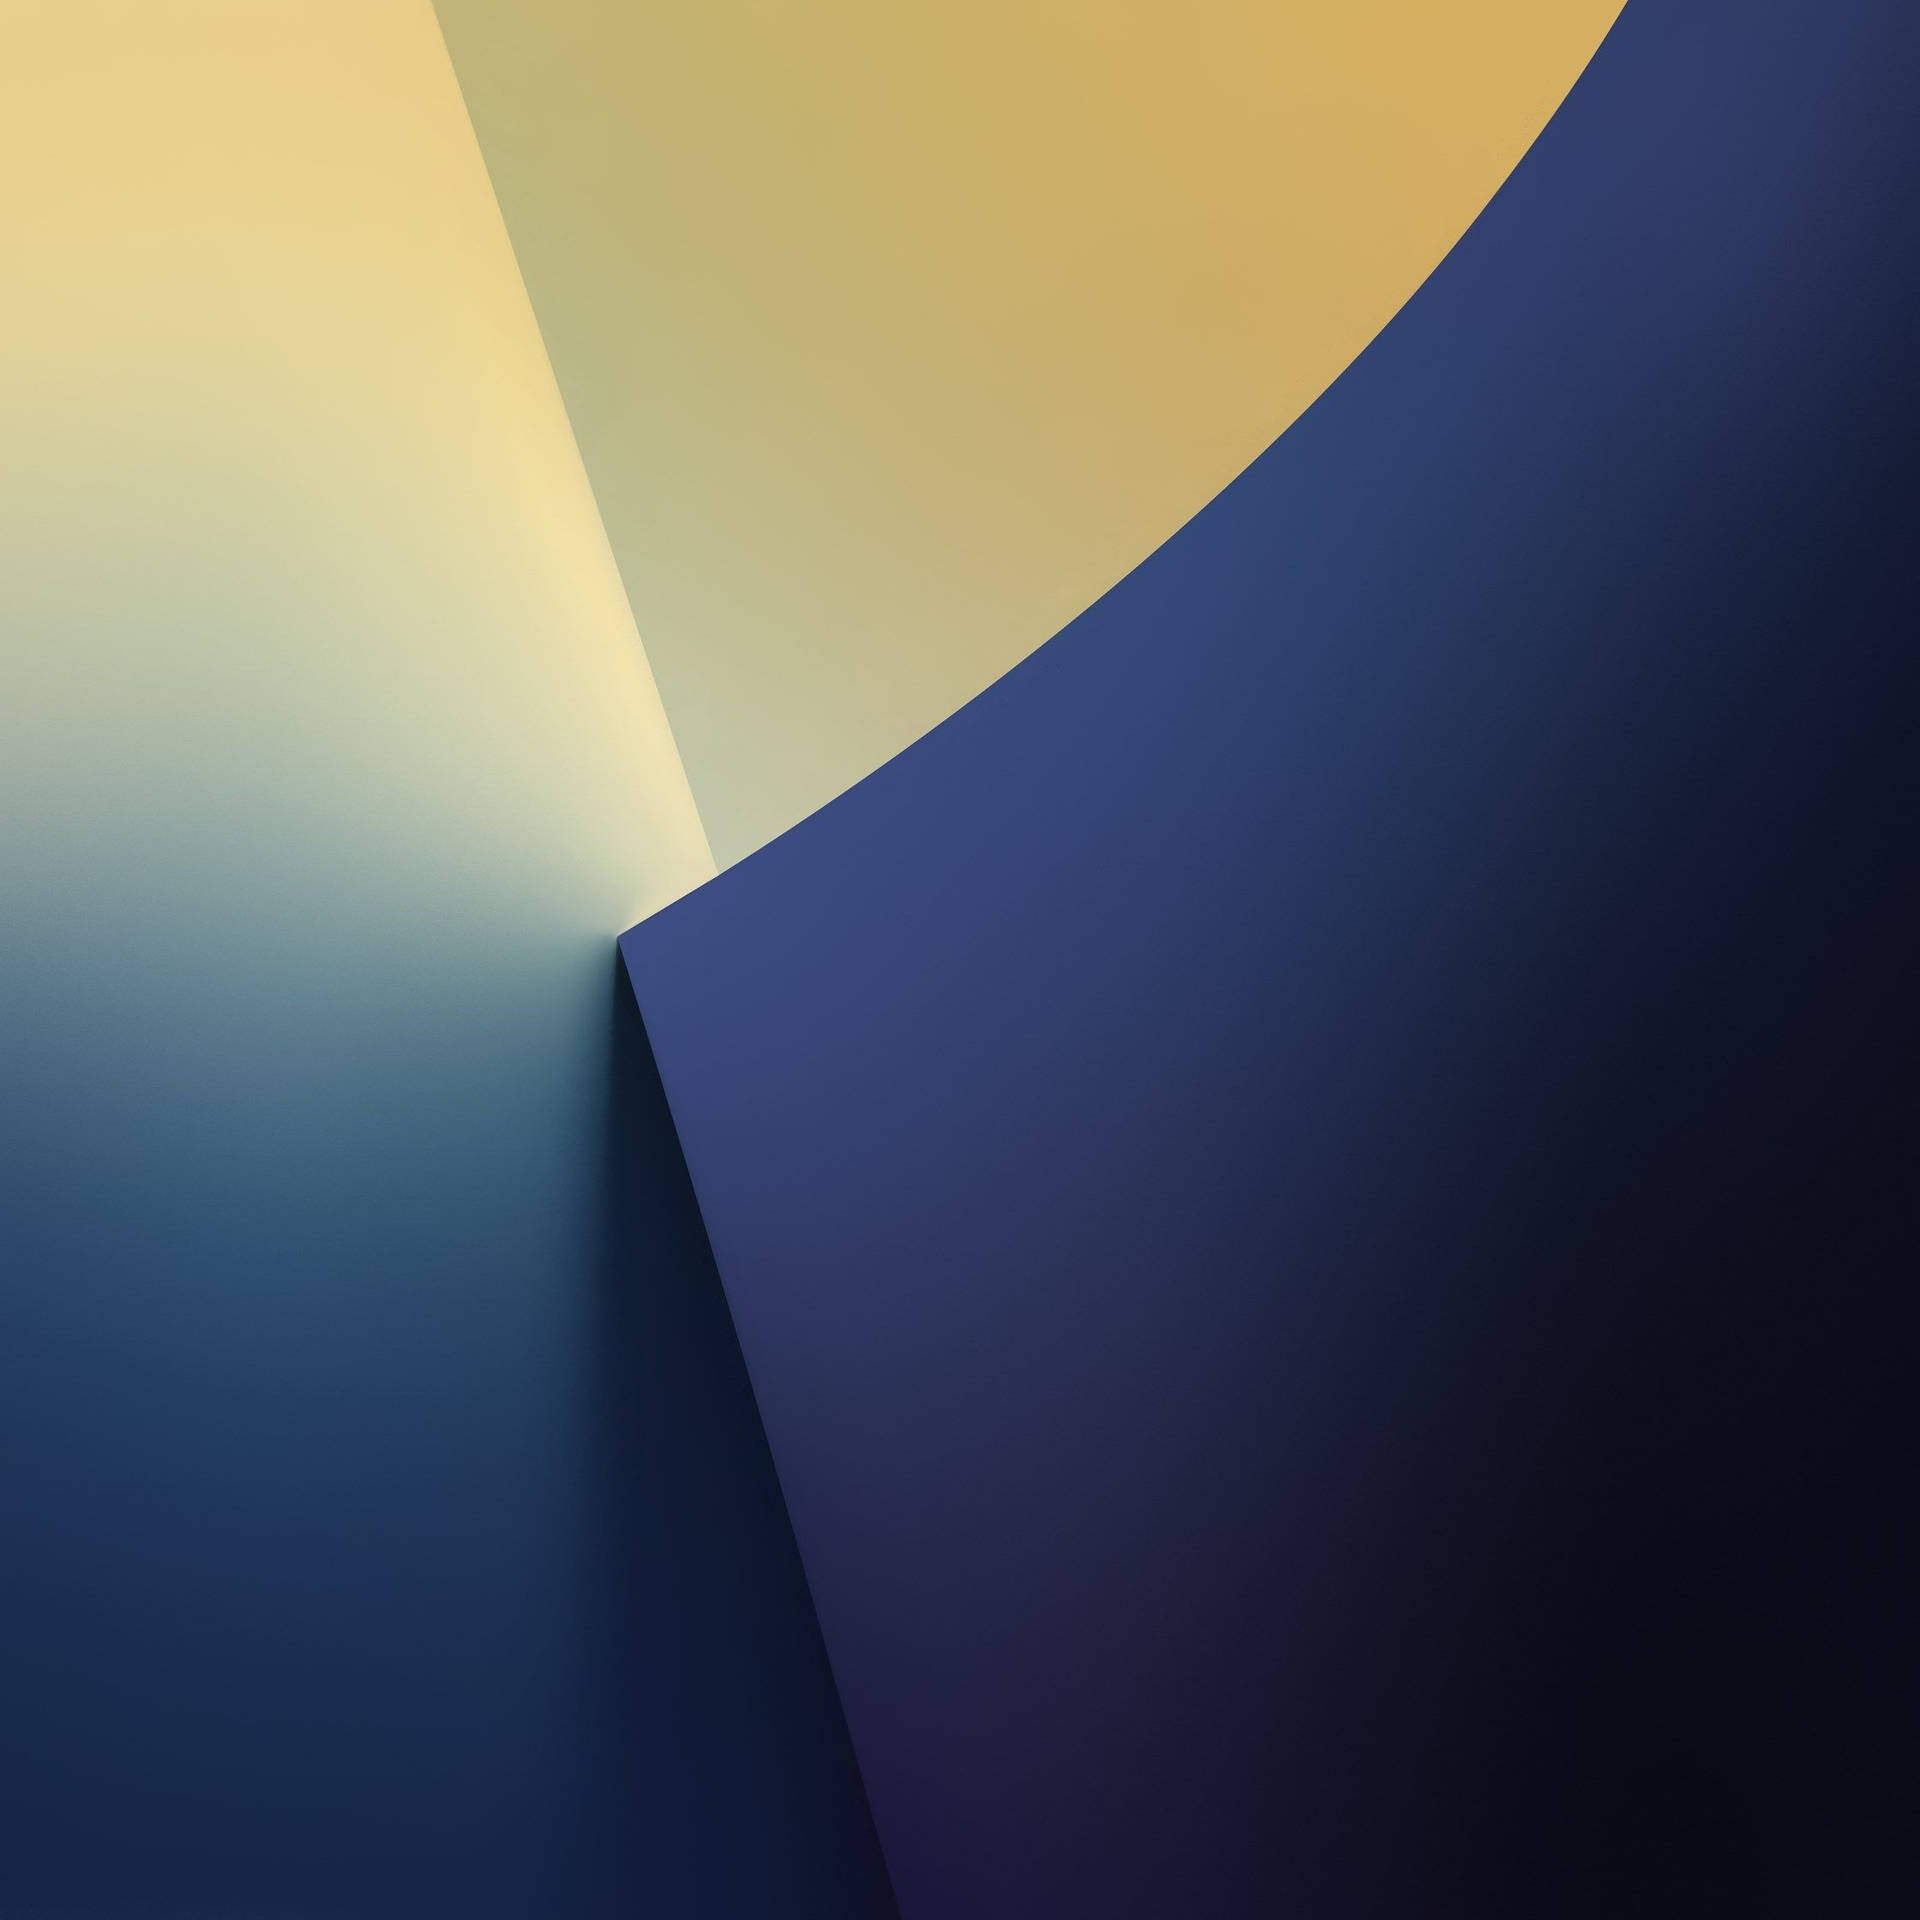 Galaxy Note 7 Gult og Blå Geometrisk Design Wallpaper